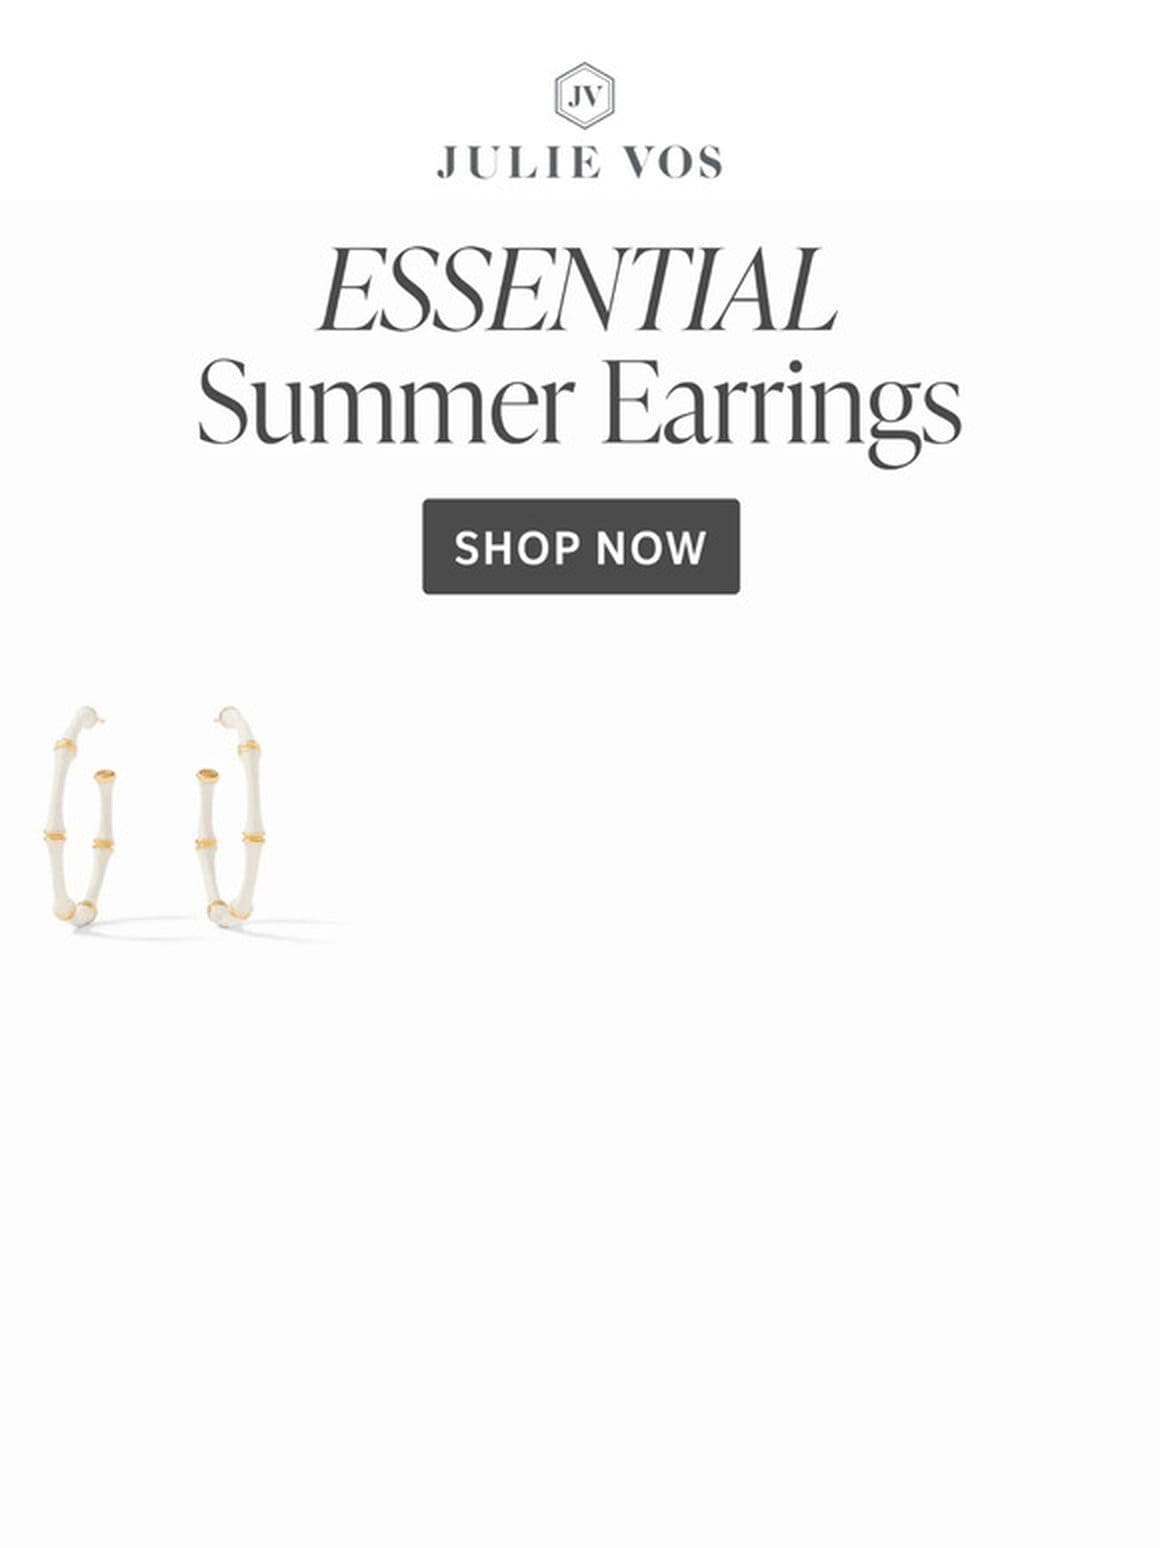 Essential Summer Earrings ☀️